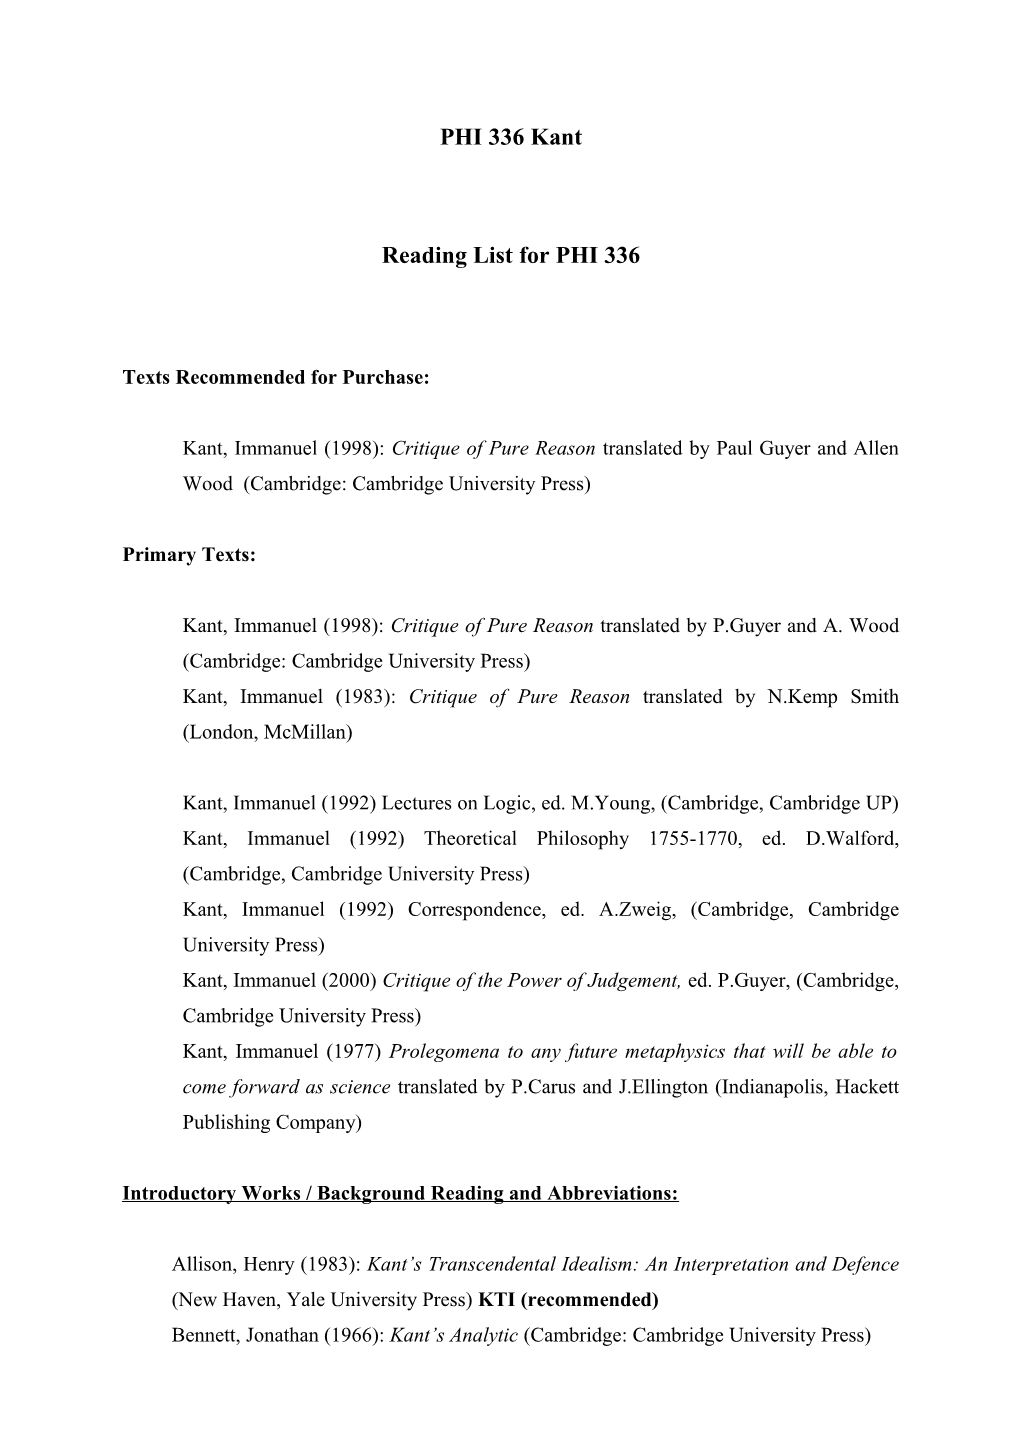 Reading List for PHI 336